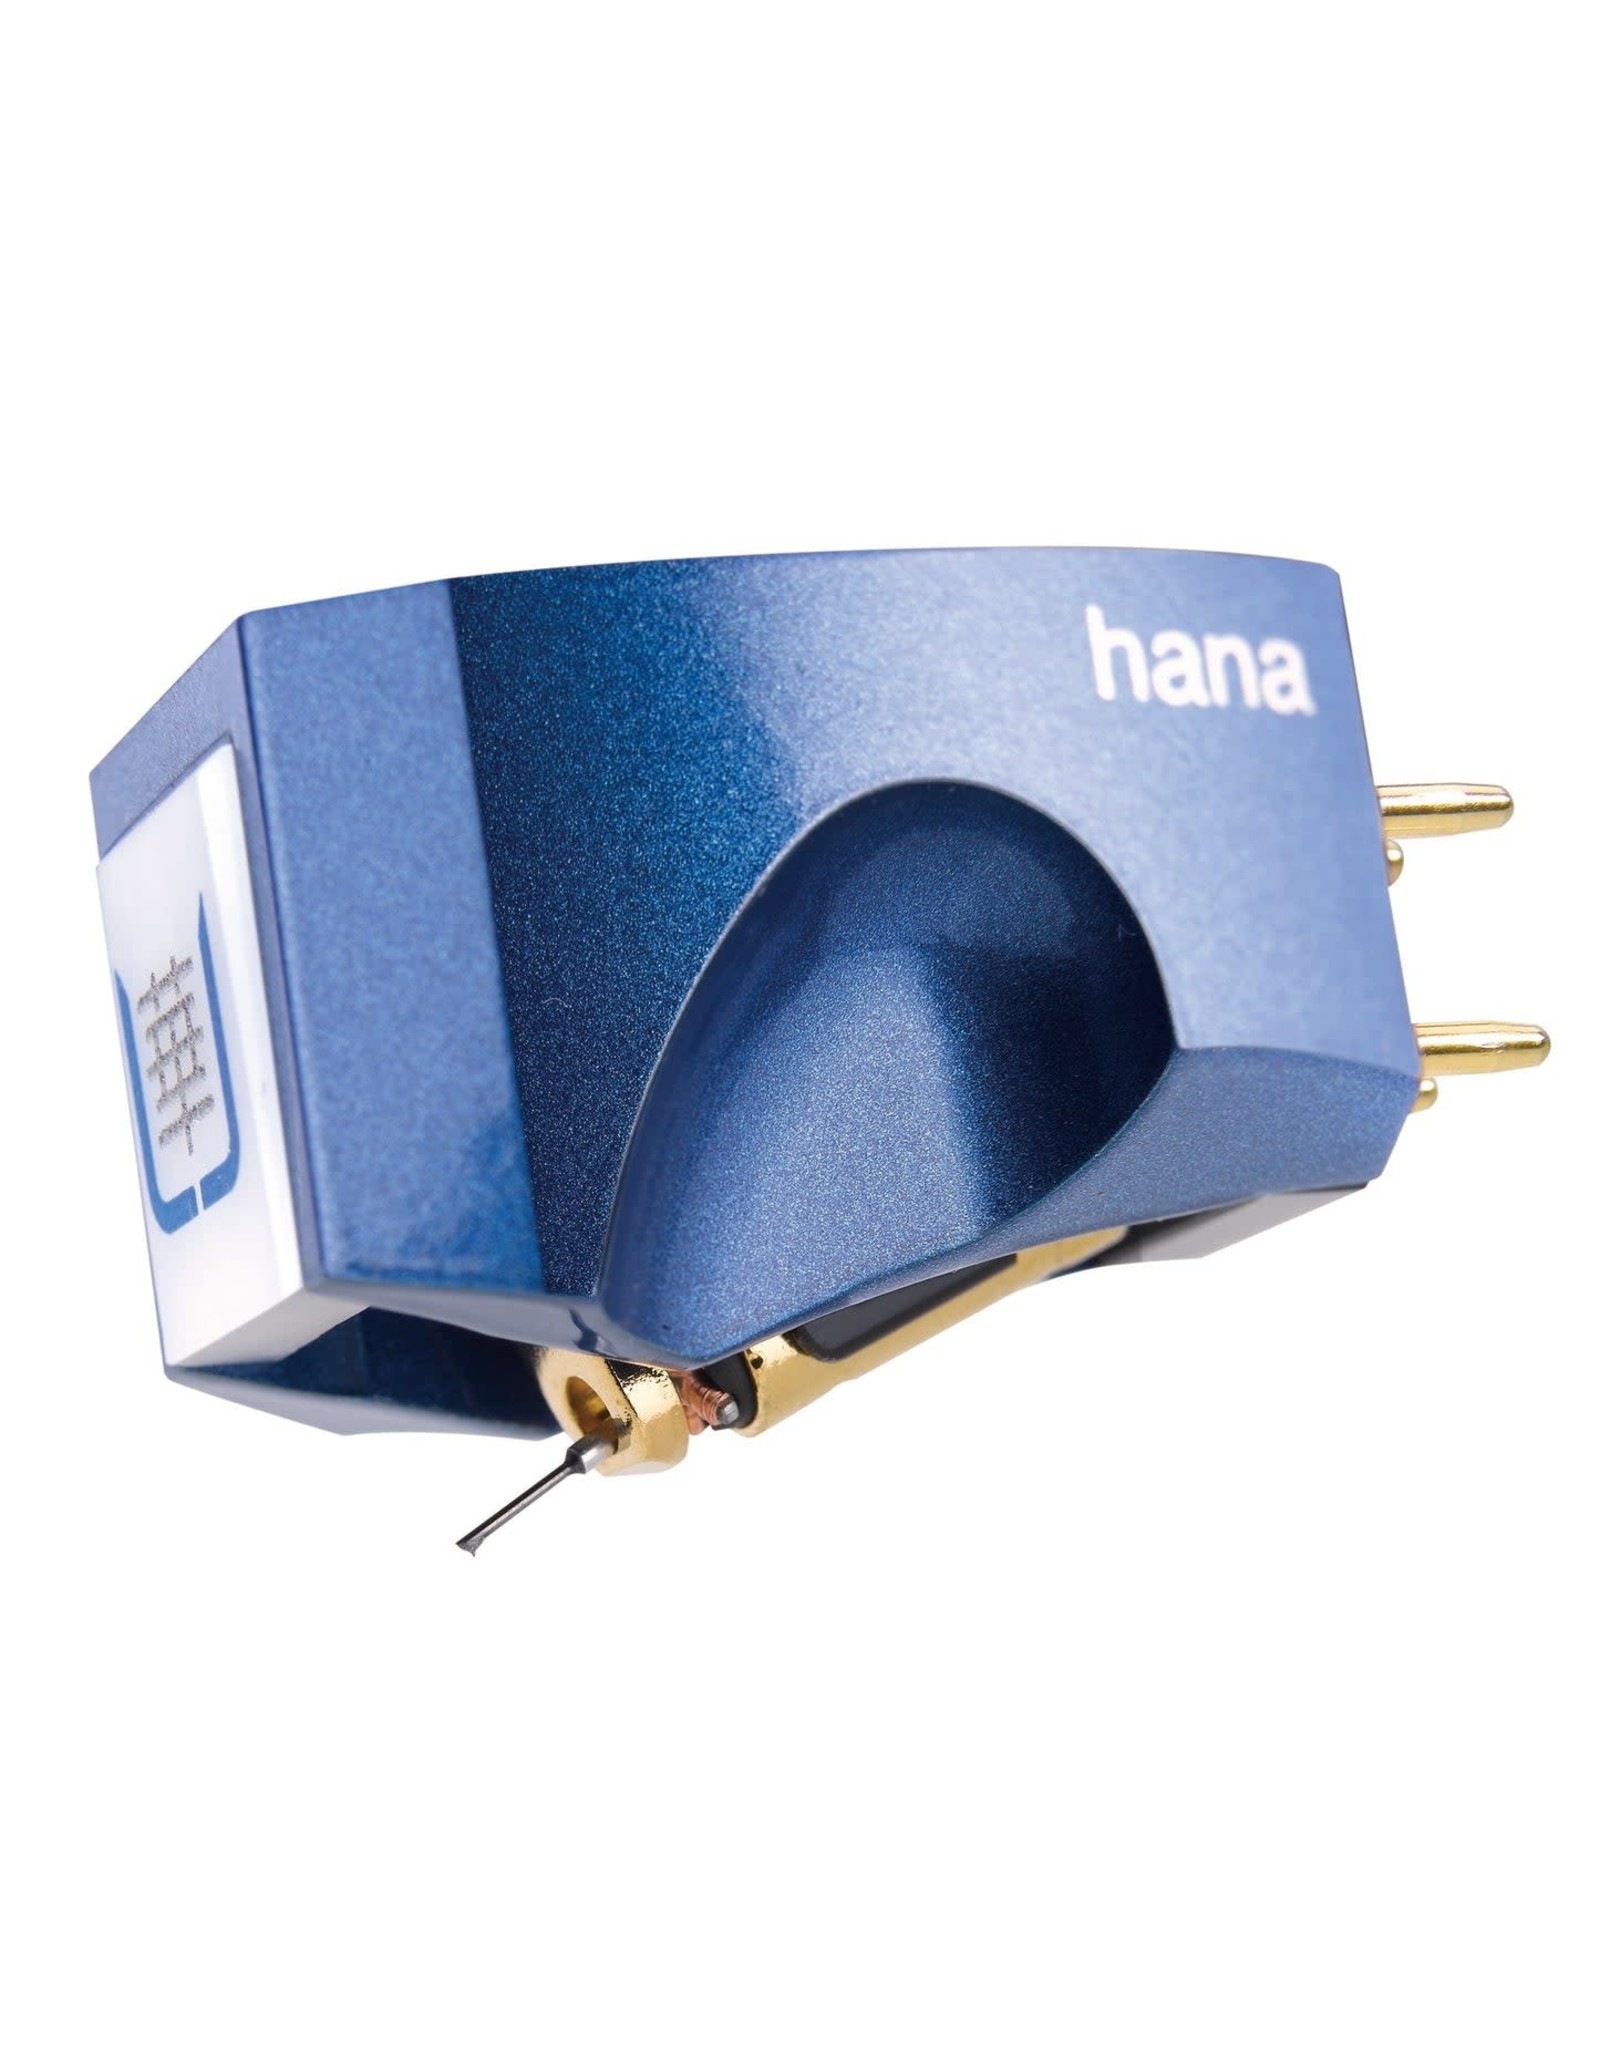 Hana Hana Umami Blue Microline Low Output MC Phono Cartridge